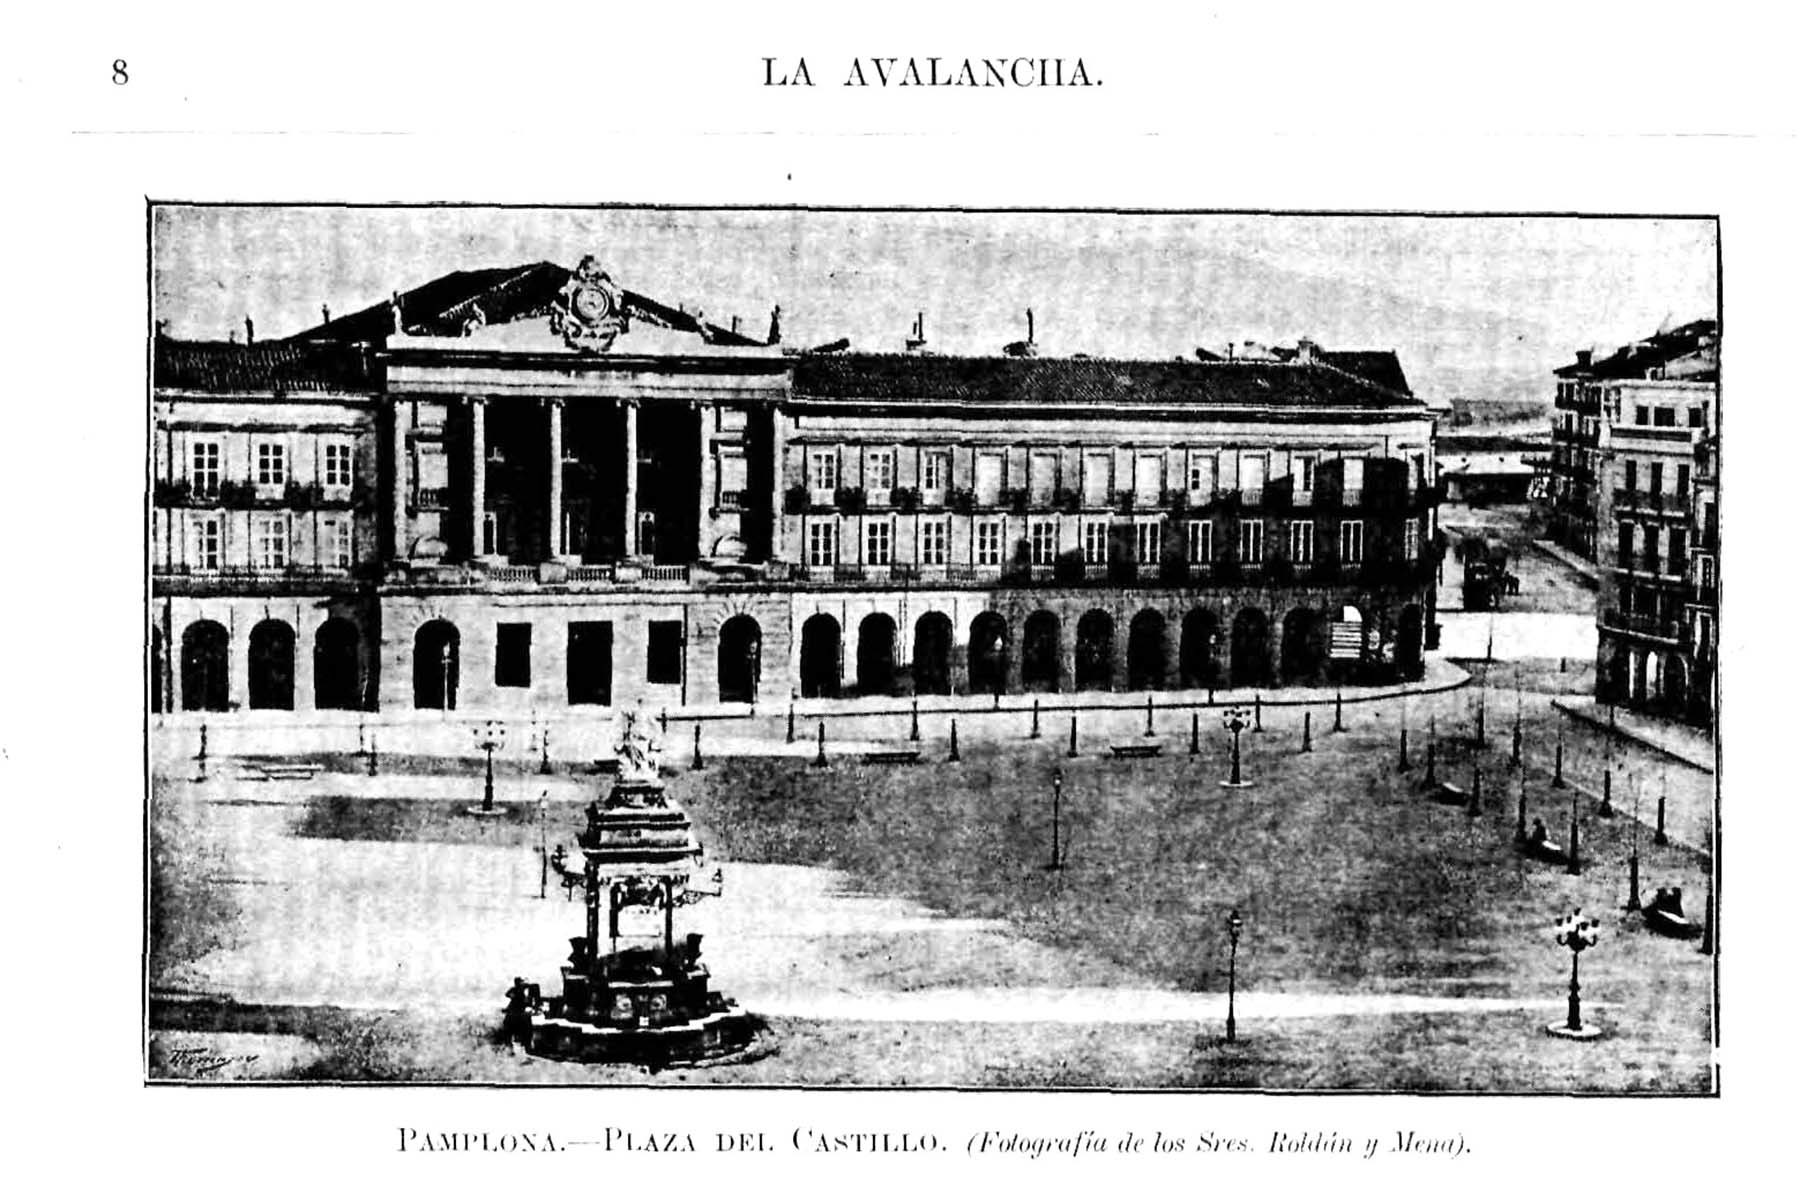 Foto publicada en el ejemplar del 24 octubre 1895 de la revista La Avalancha, en la que observamos la fachada del Teatro Principal contiguo al Palacio de la Diputación.